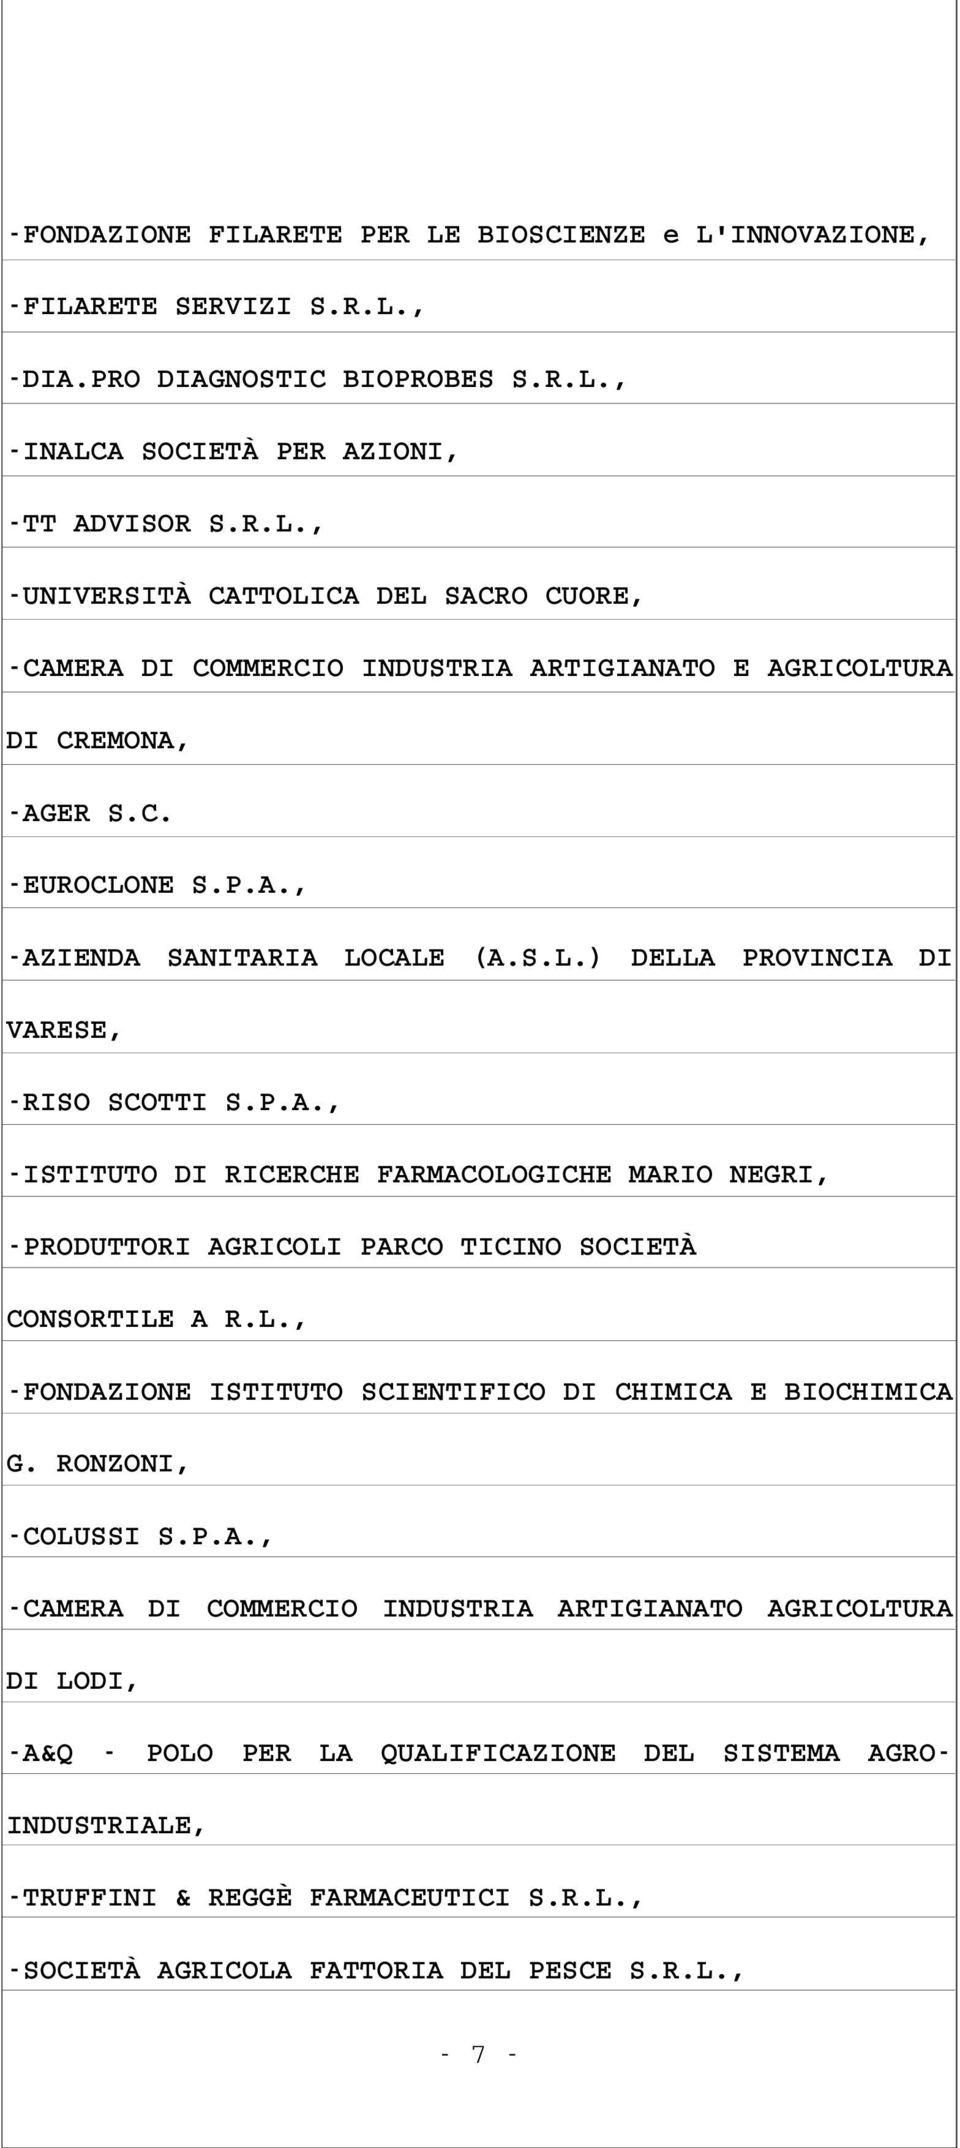 L., FONDAZIONE ISTITUTO SCIENTIFICO DI CHIMICA E BIOCHIMICA G. RONZONI, COLUSSI S.P.A., CAMERA DI COMMERCIO INDUSTRIA ARTIGIANATO AGRICOLTURA DI LODI, A&Q POLO PER LA QUALIFICAZIONE DEL SISTEMA AGRO INDUSTRIALE, TRUFFINI & REGGÈ FARMACEUTICI S.